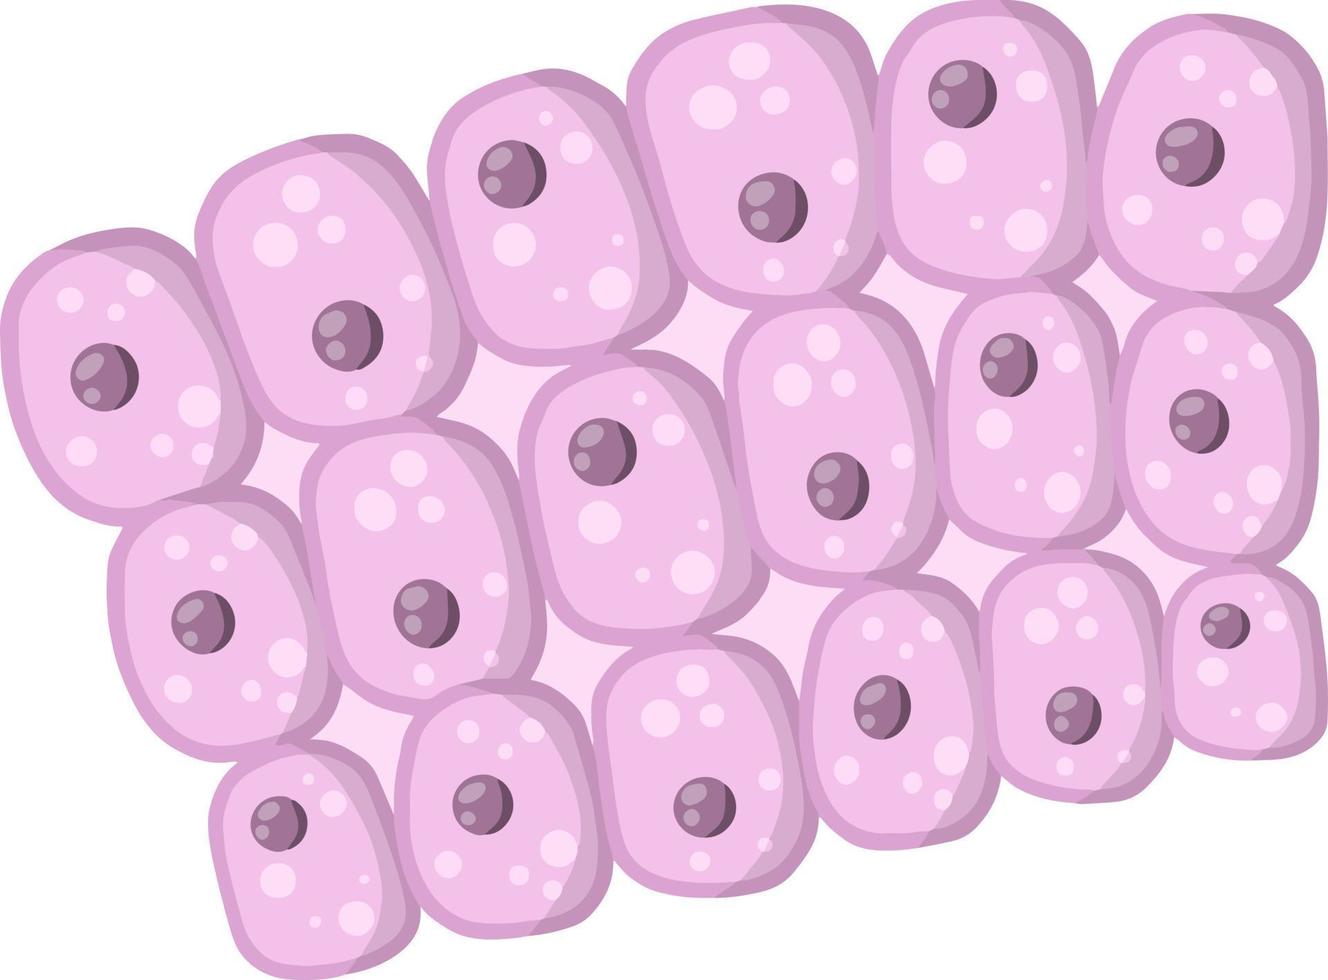 cellule de l'organisme humain. illustration plate de dessin animé vecteur